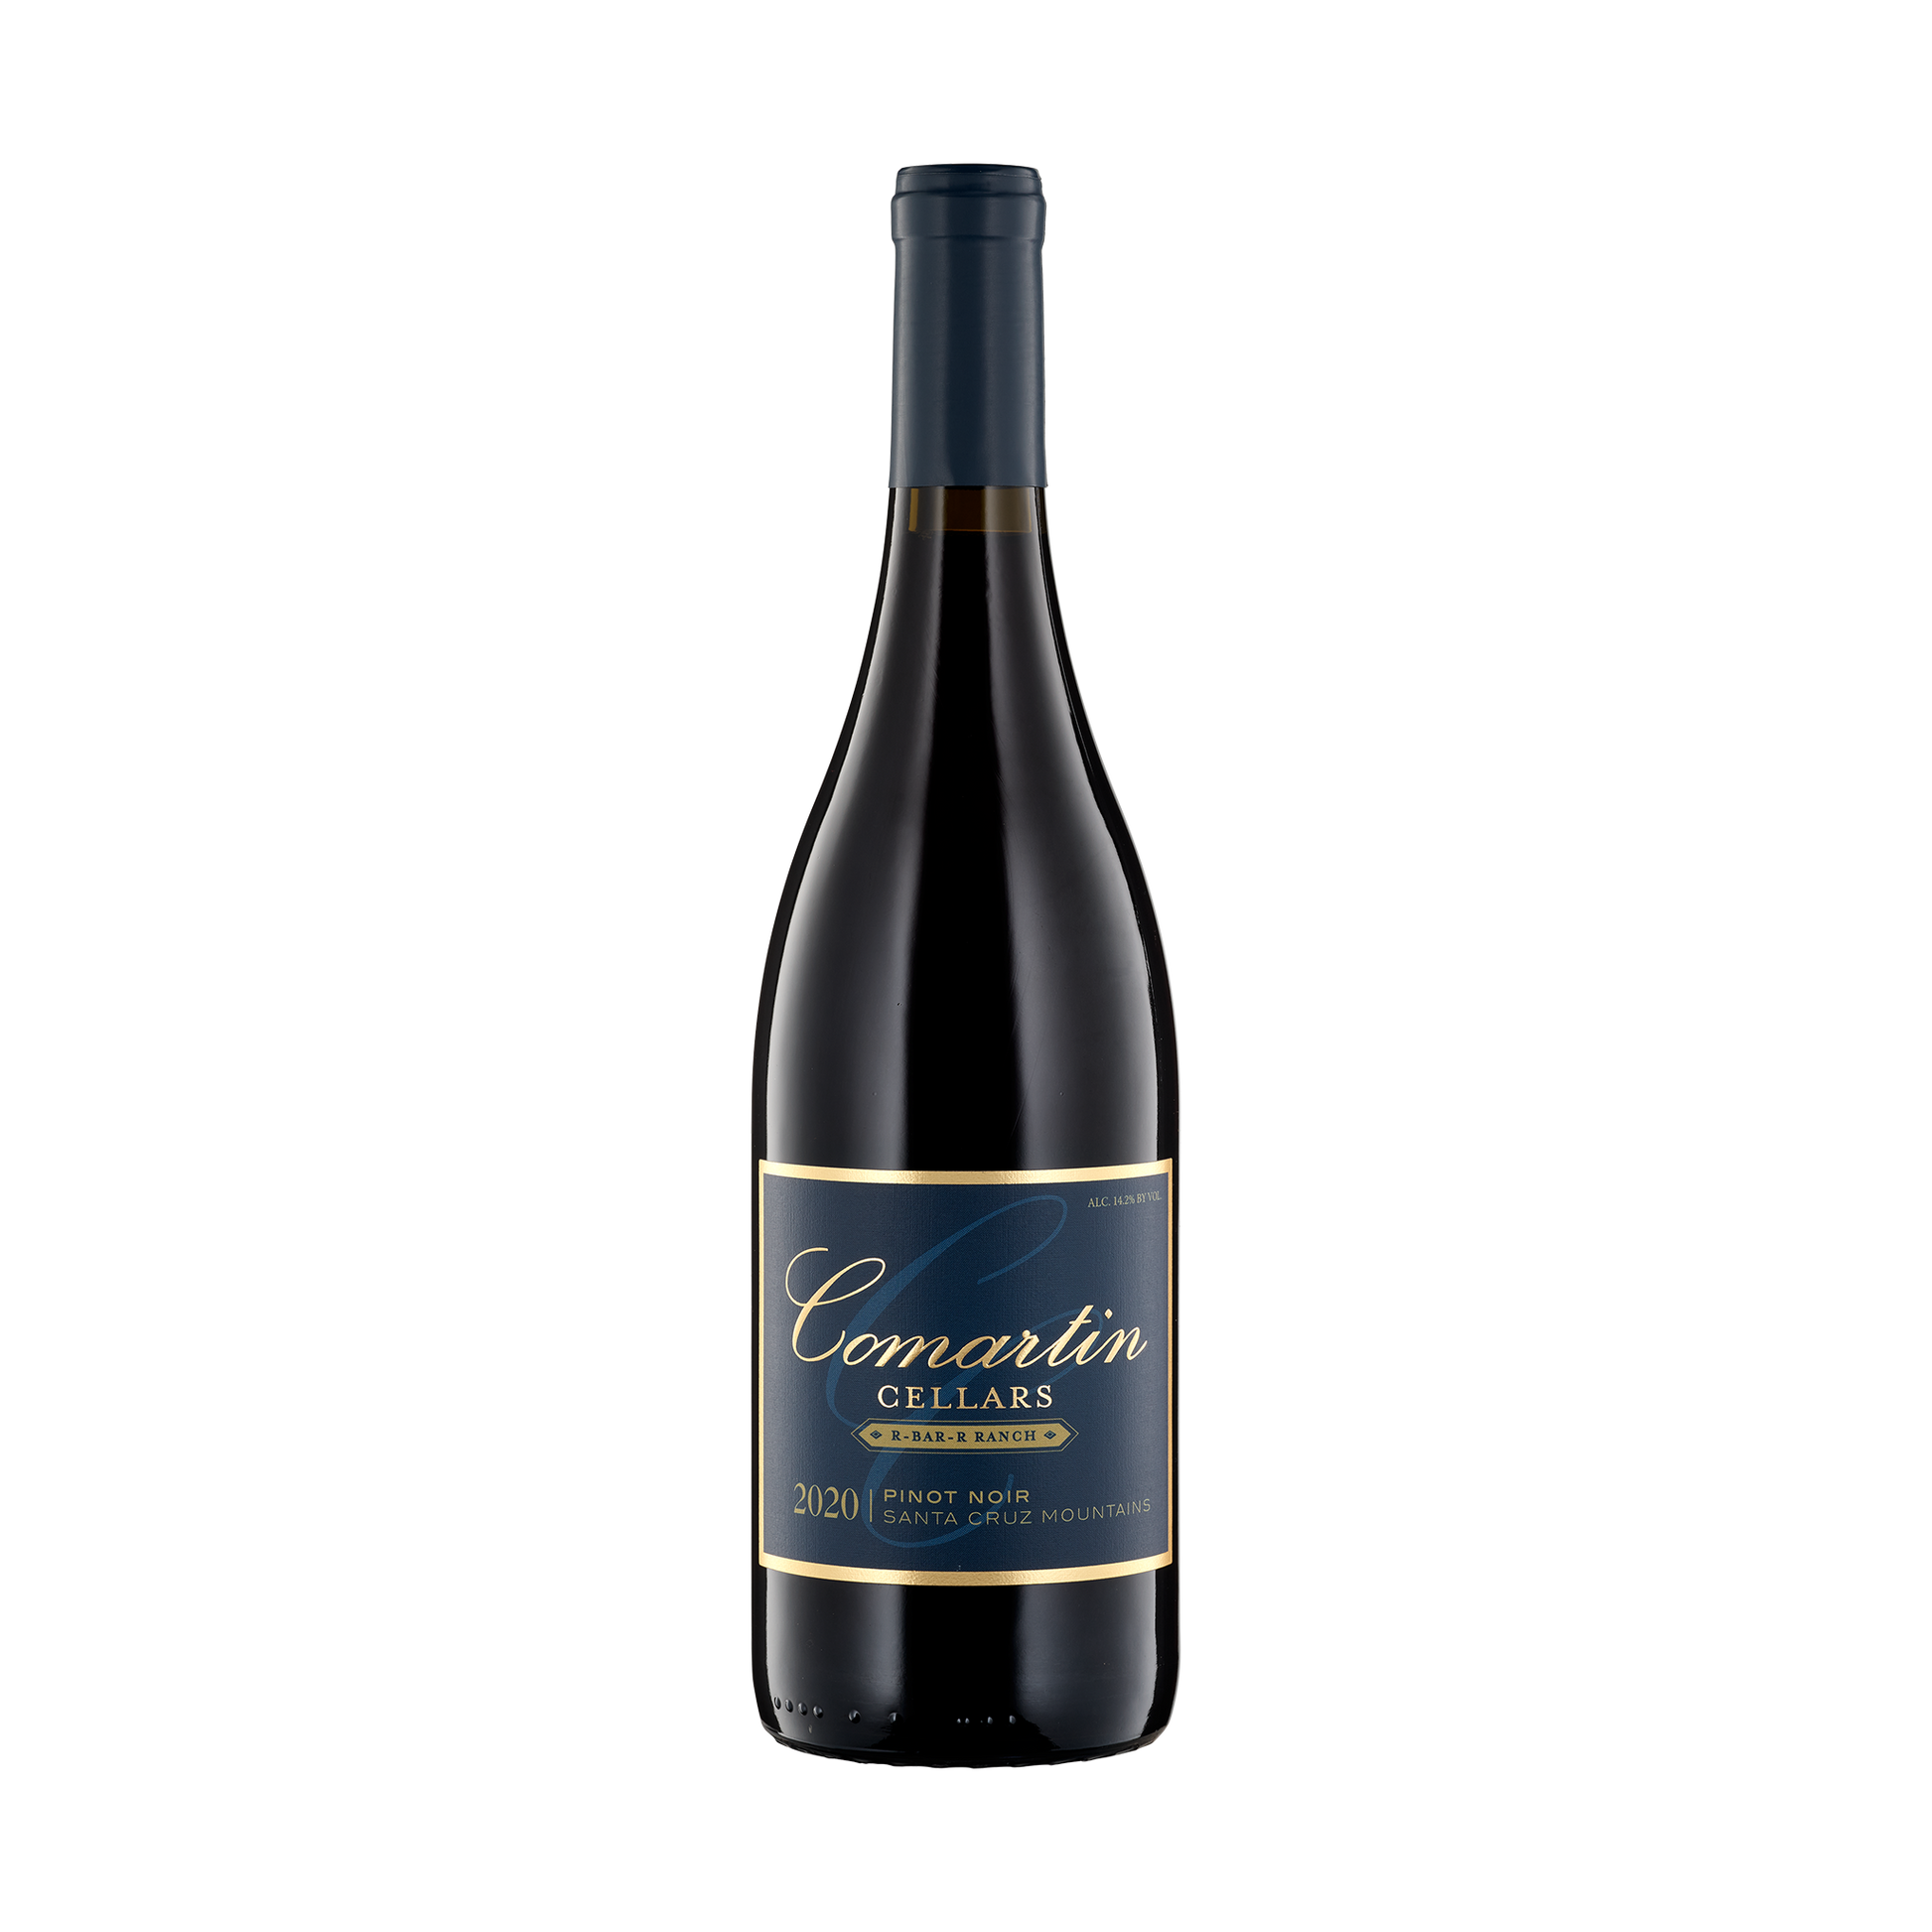 A bottle of Comartin Cellars 2020 Pinot Noir R-Bar-R Ranch